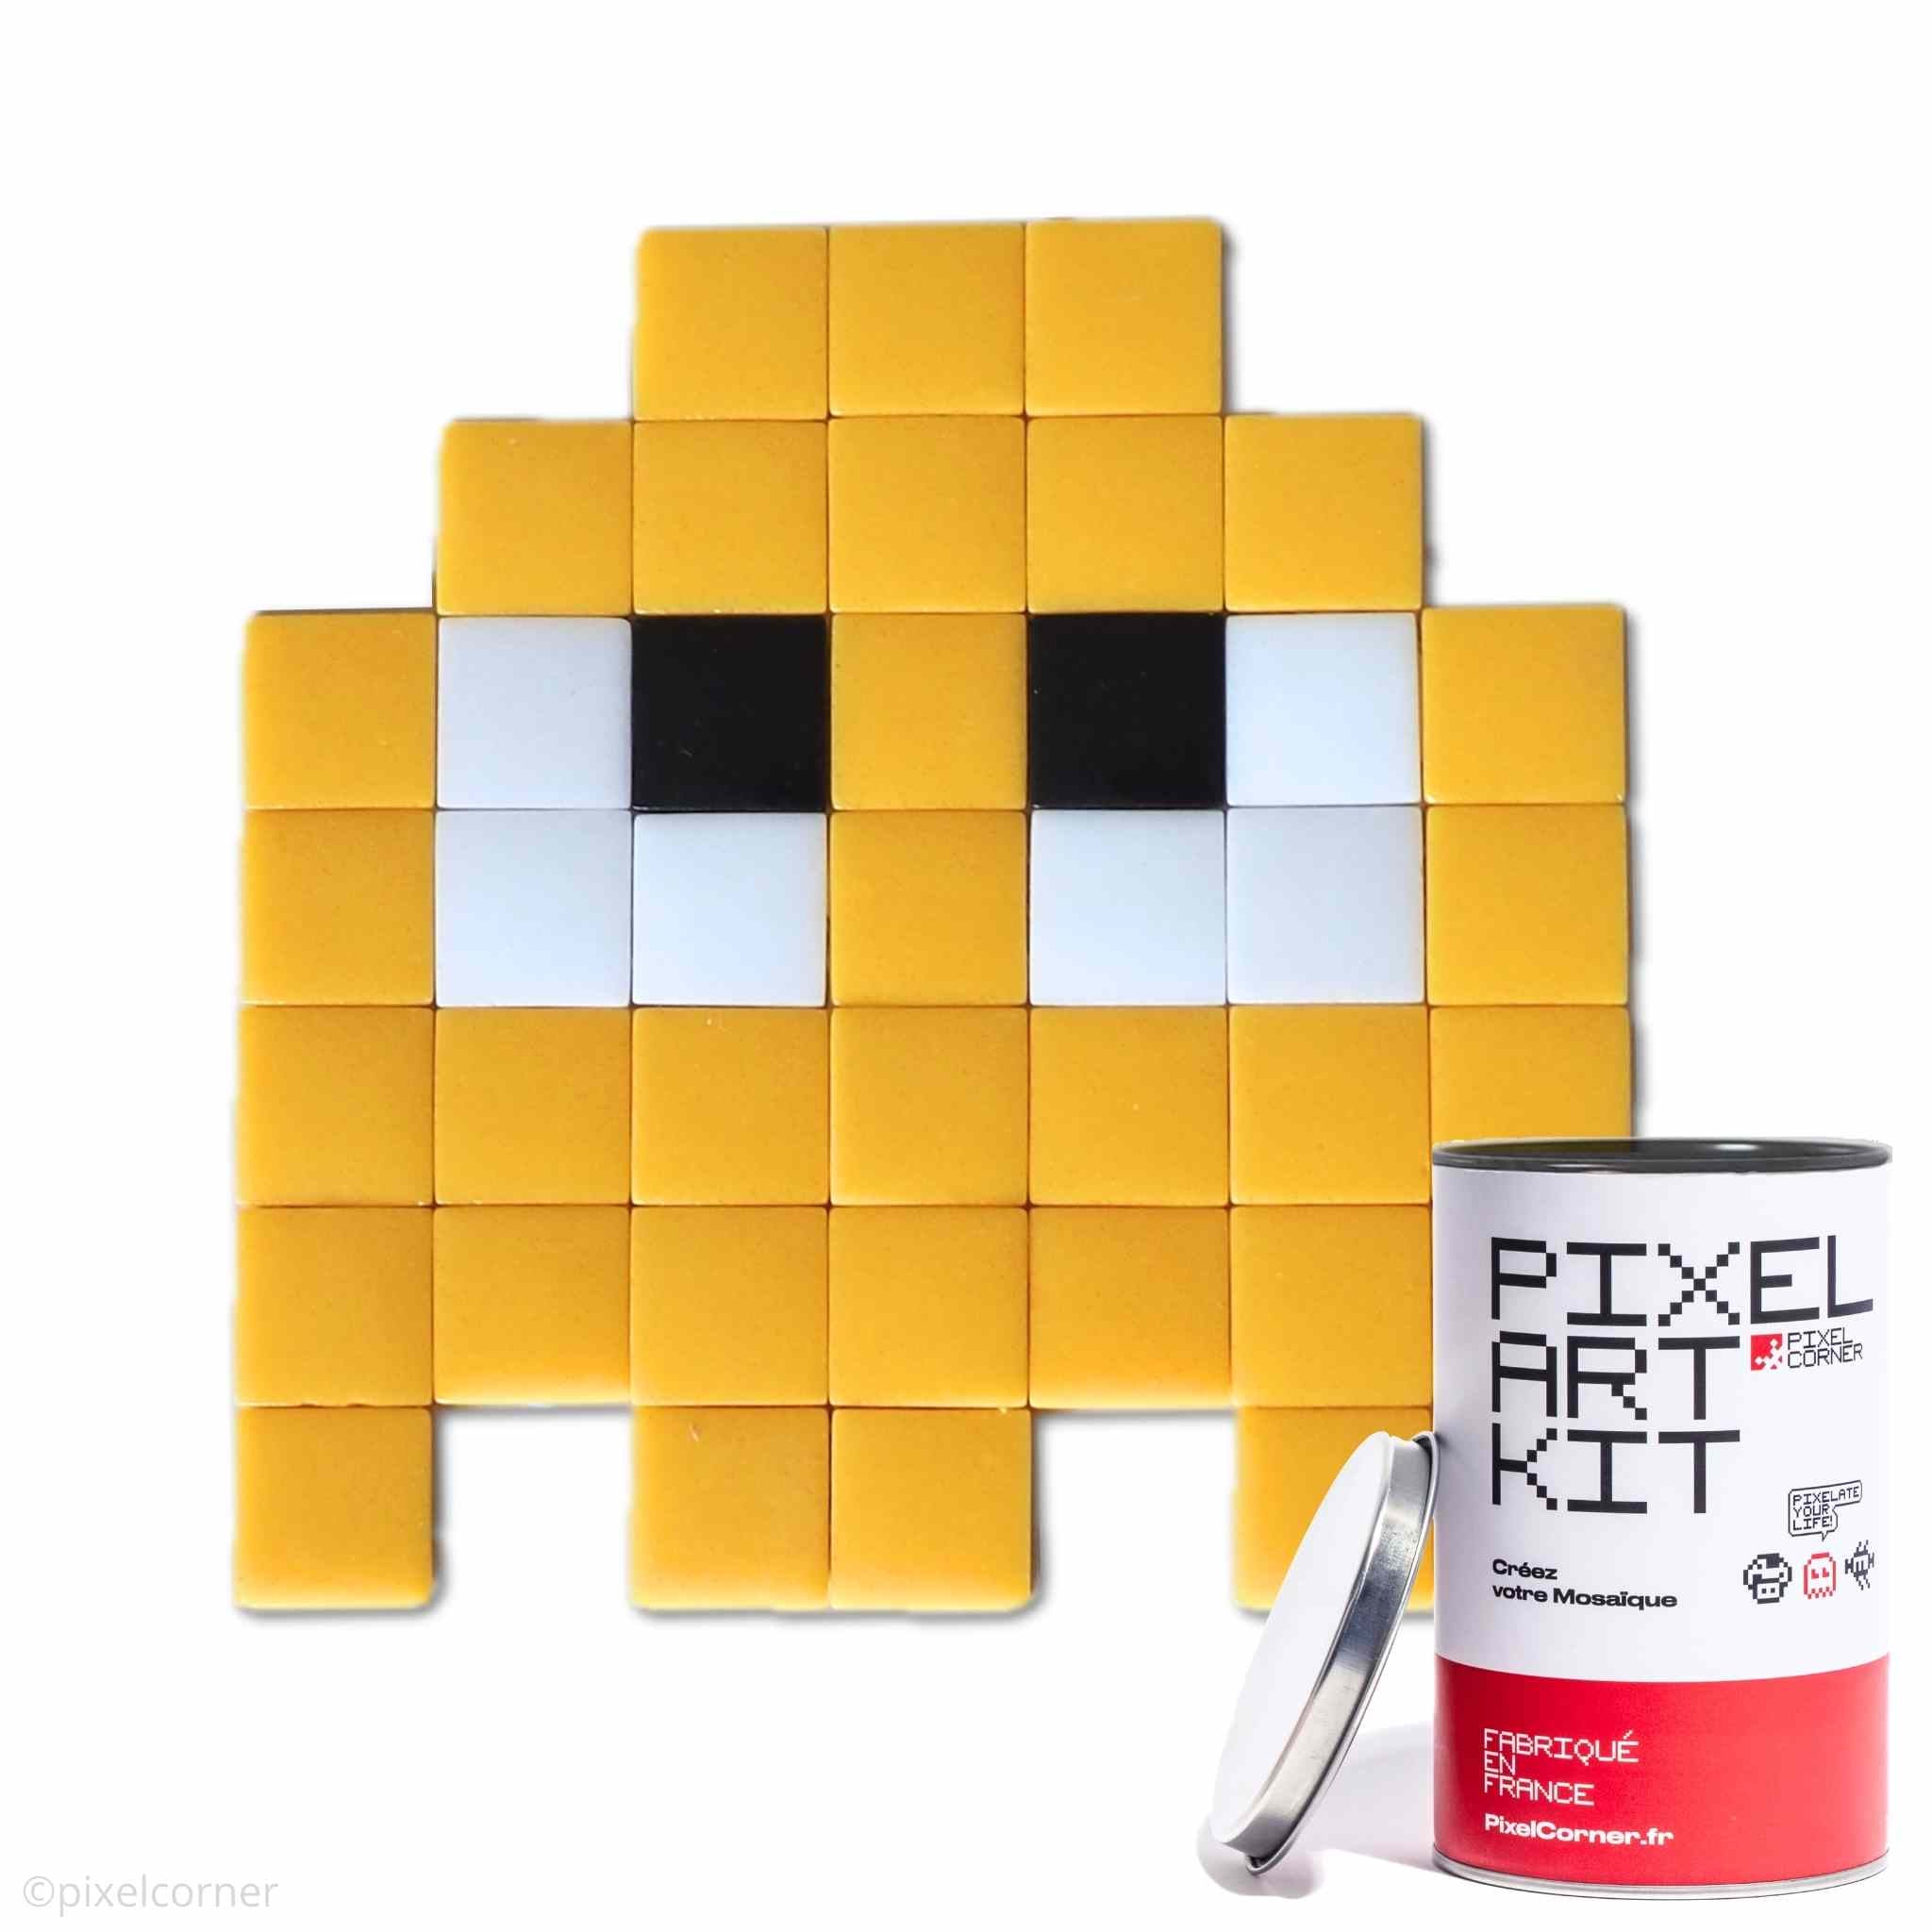 Un fantome jaune en pixel art retro gaming arcade pacman avec des carreaux de mosaïque de verre avec une boite de pixel art kit diy au premier plan